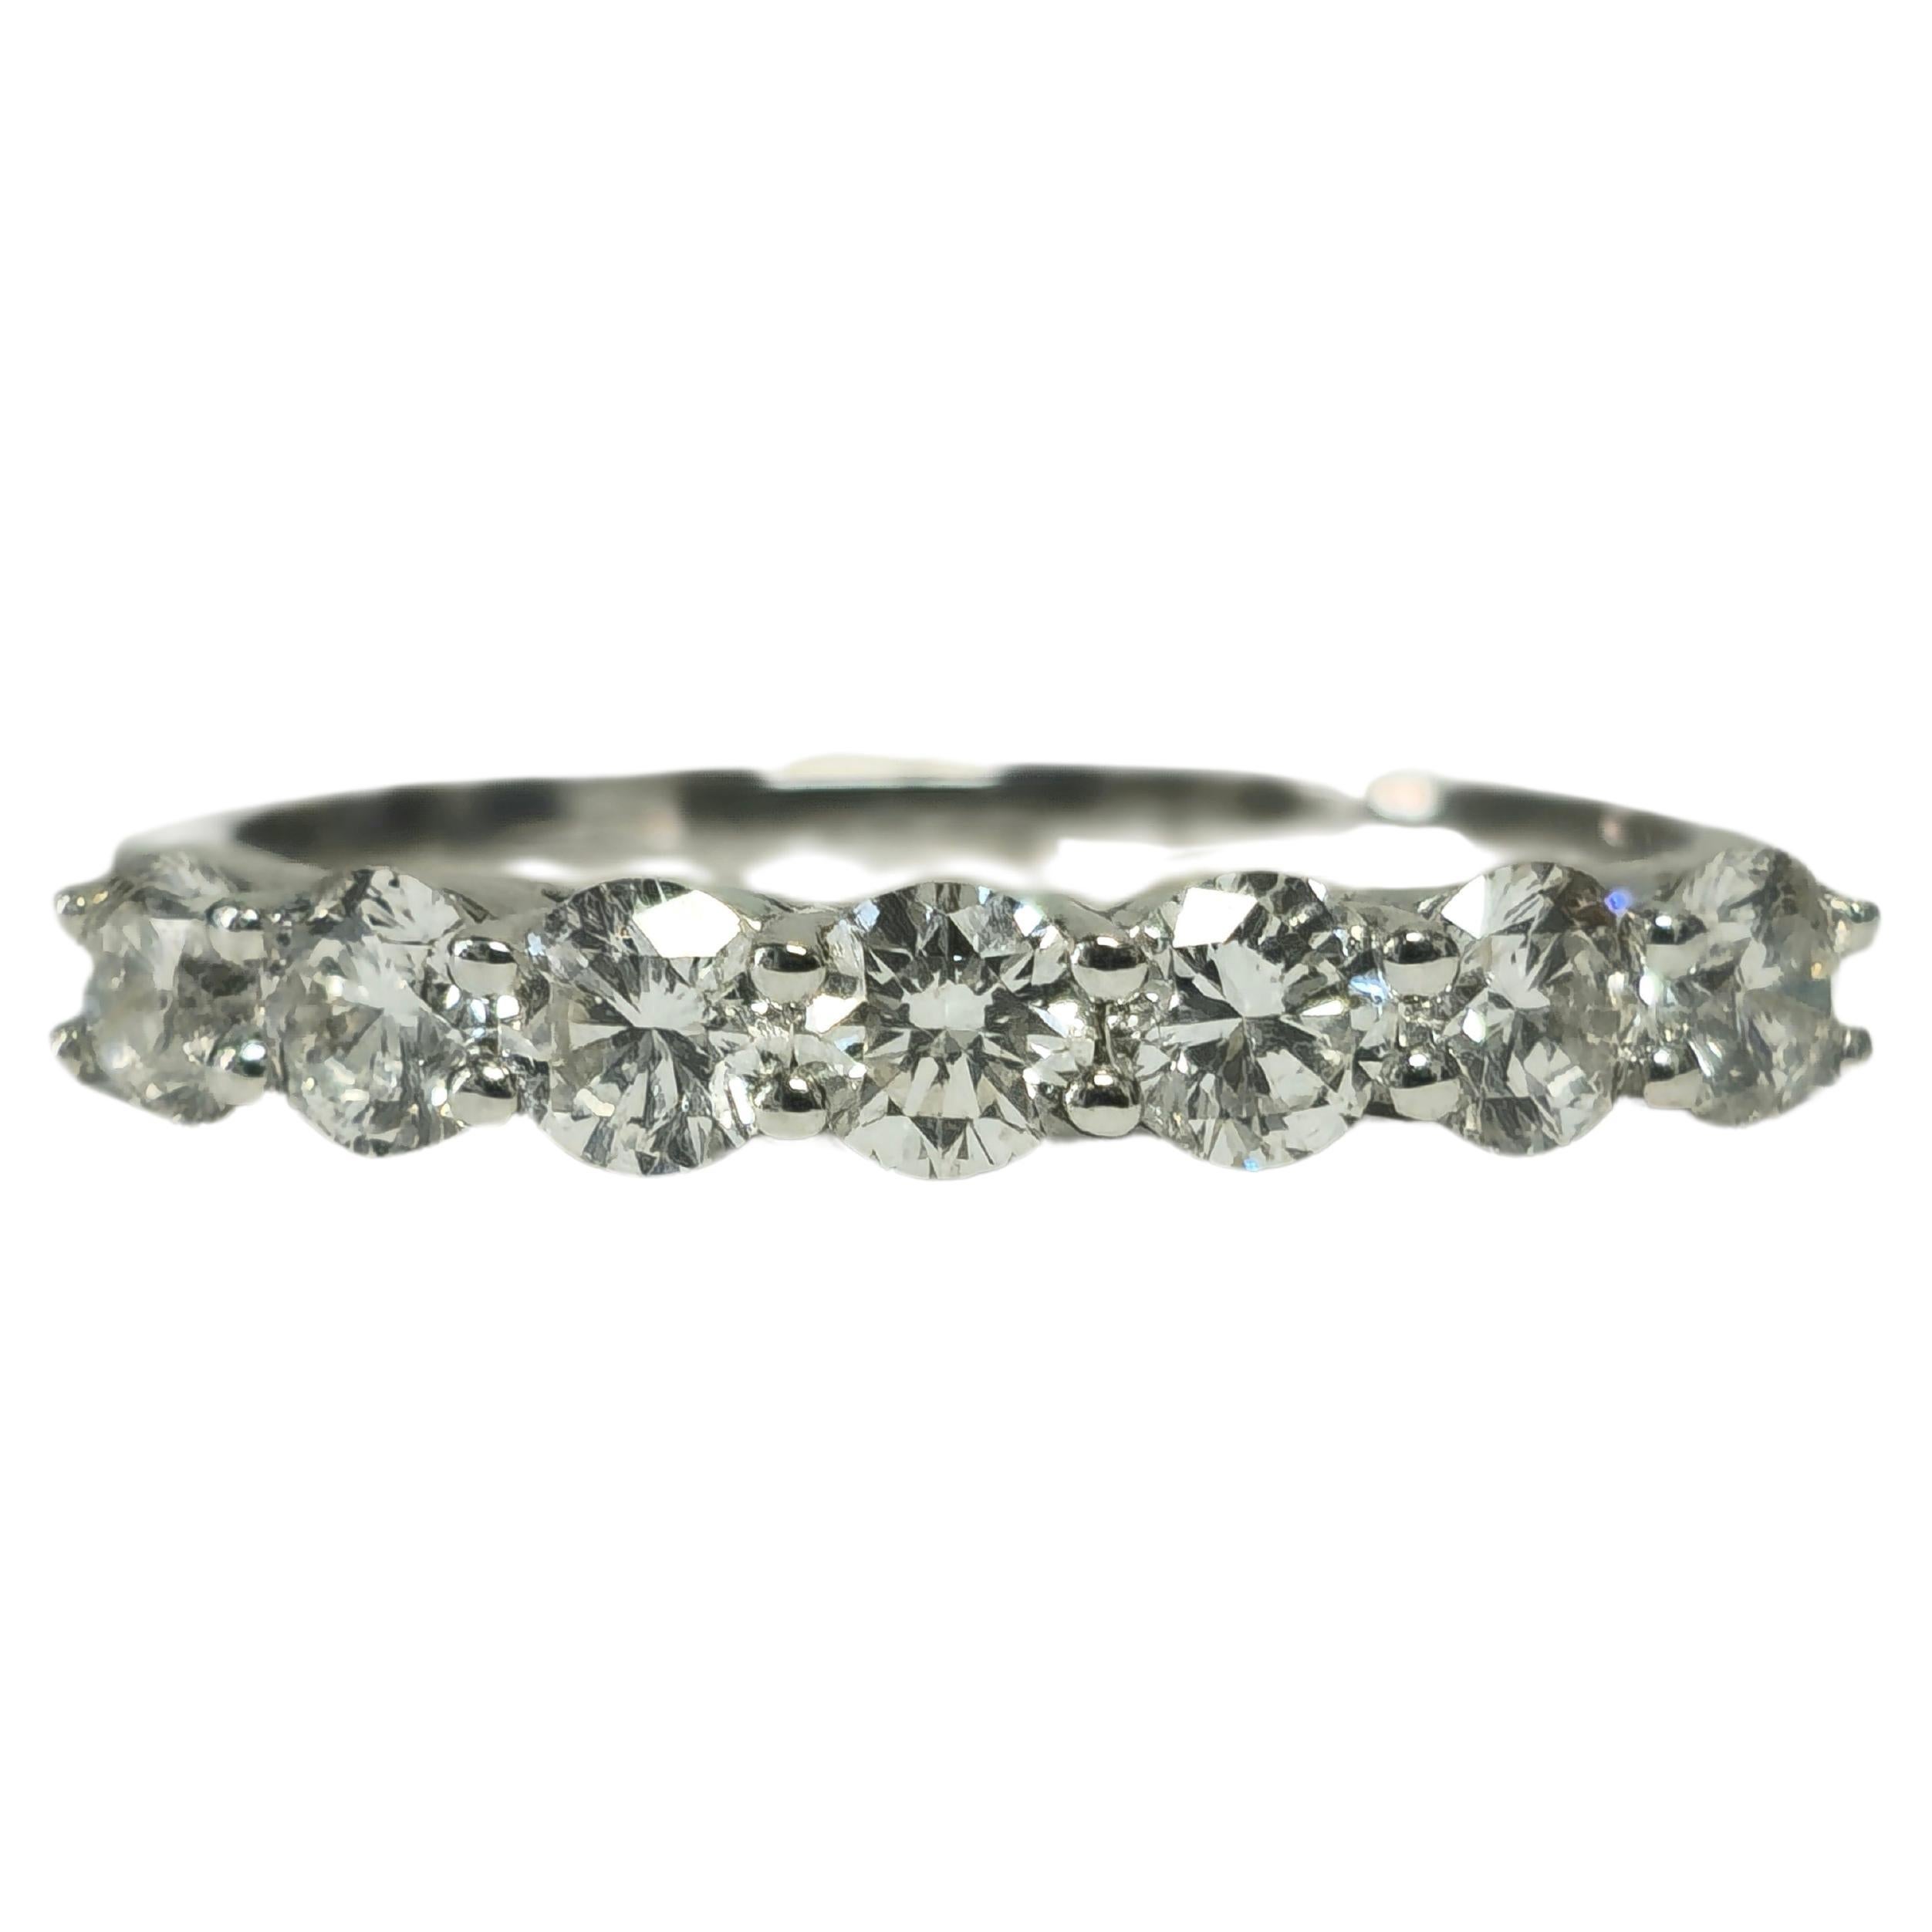 18k Gold, VVS Diamond Engagement Ring For Her.